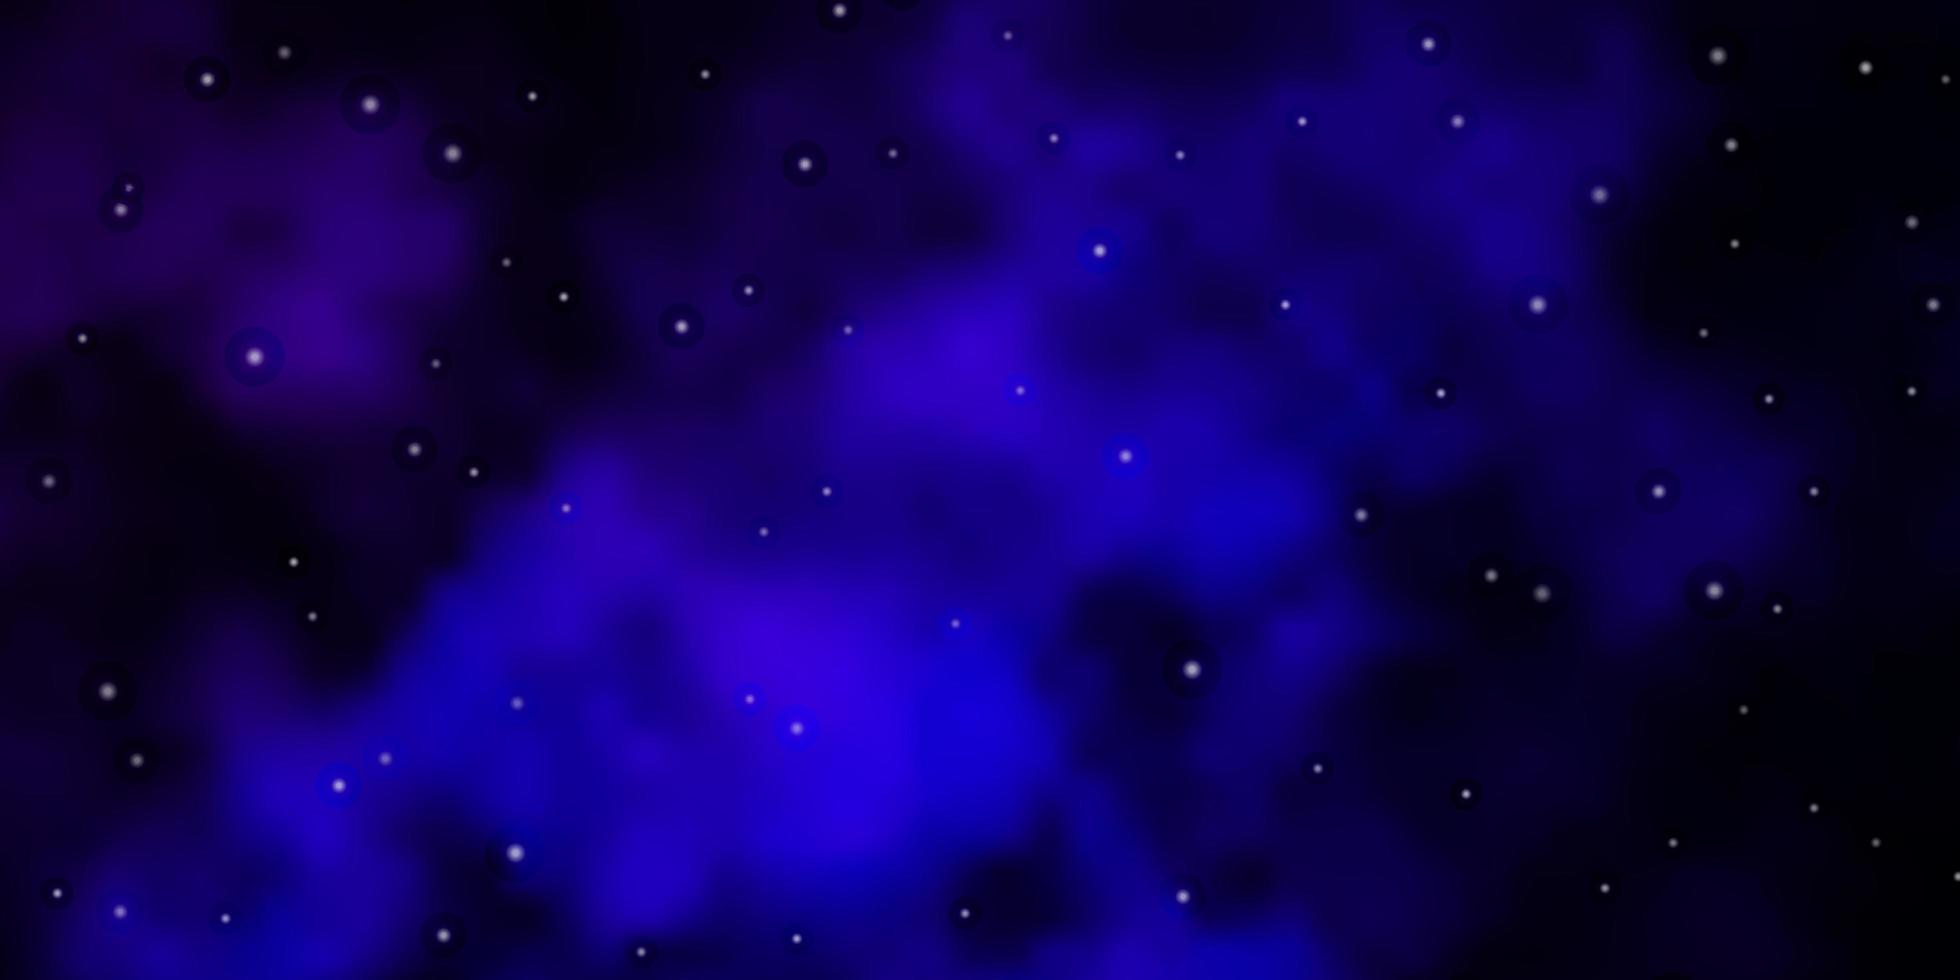 Dunkelrosa-blaues Vektor-Layout mit hellen Sternen, die bunte Illustration mit kleinen und großen Sternen für Ihre Geschäftswerbung leuchten vektor